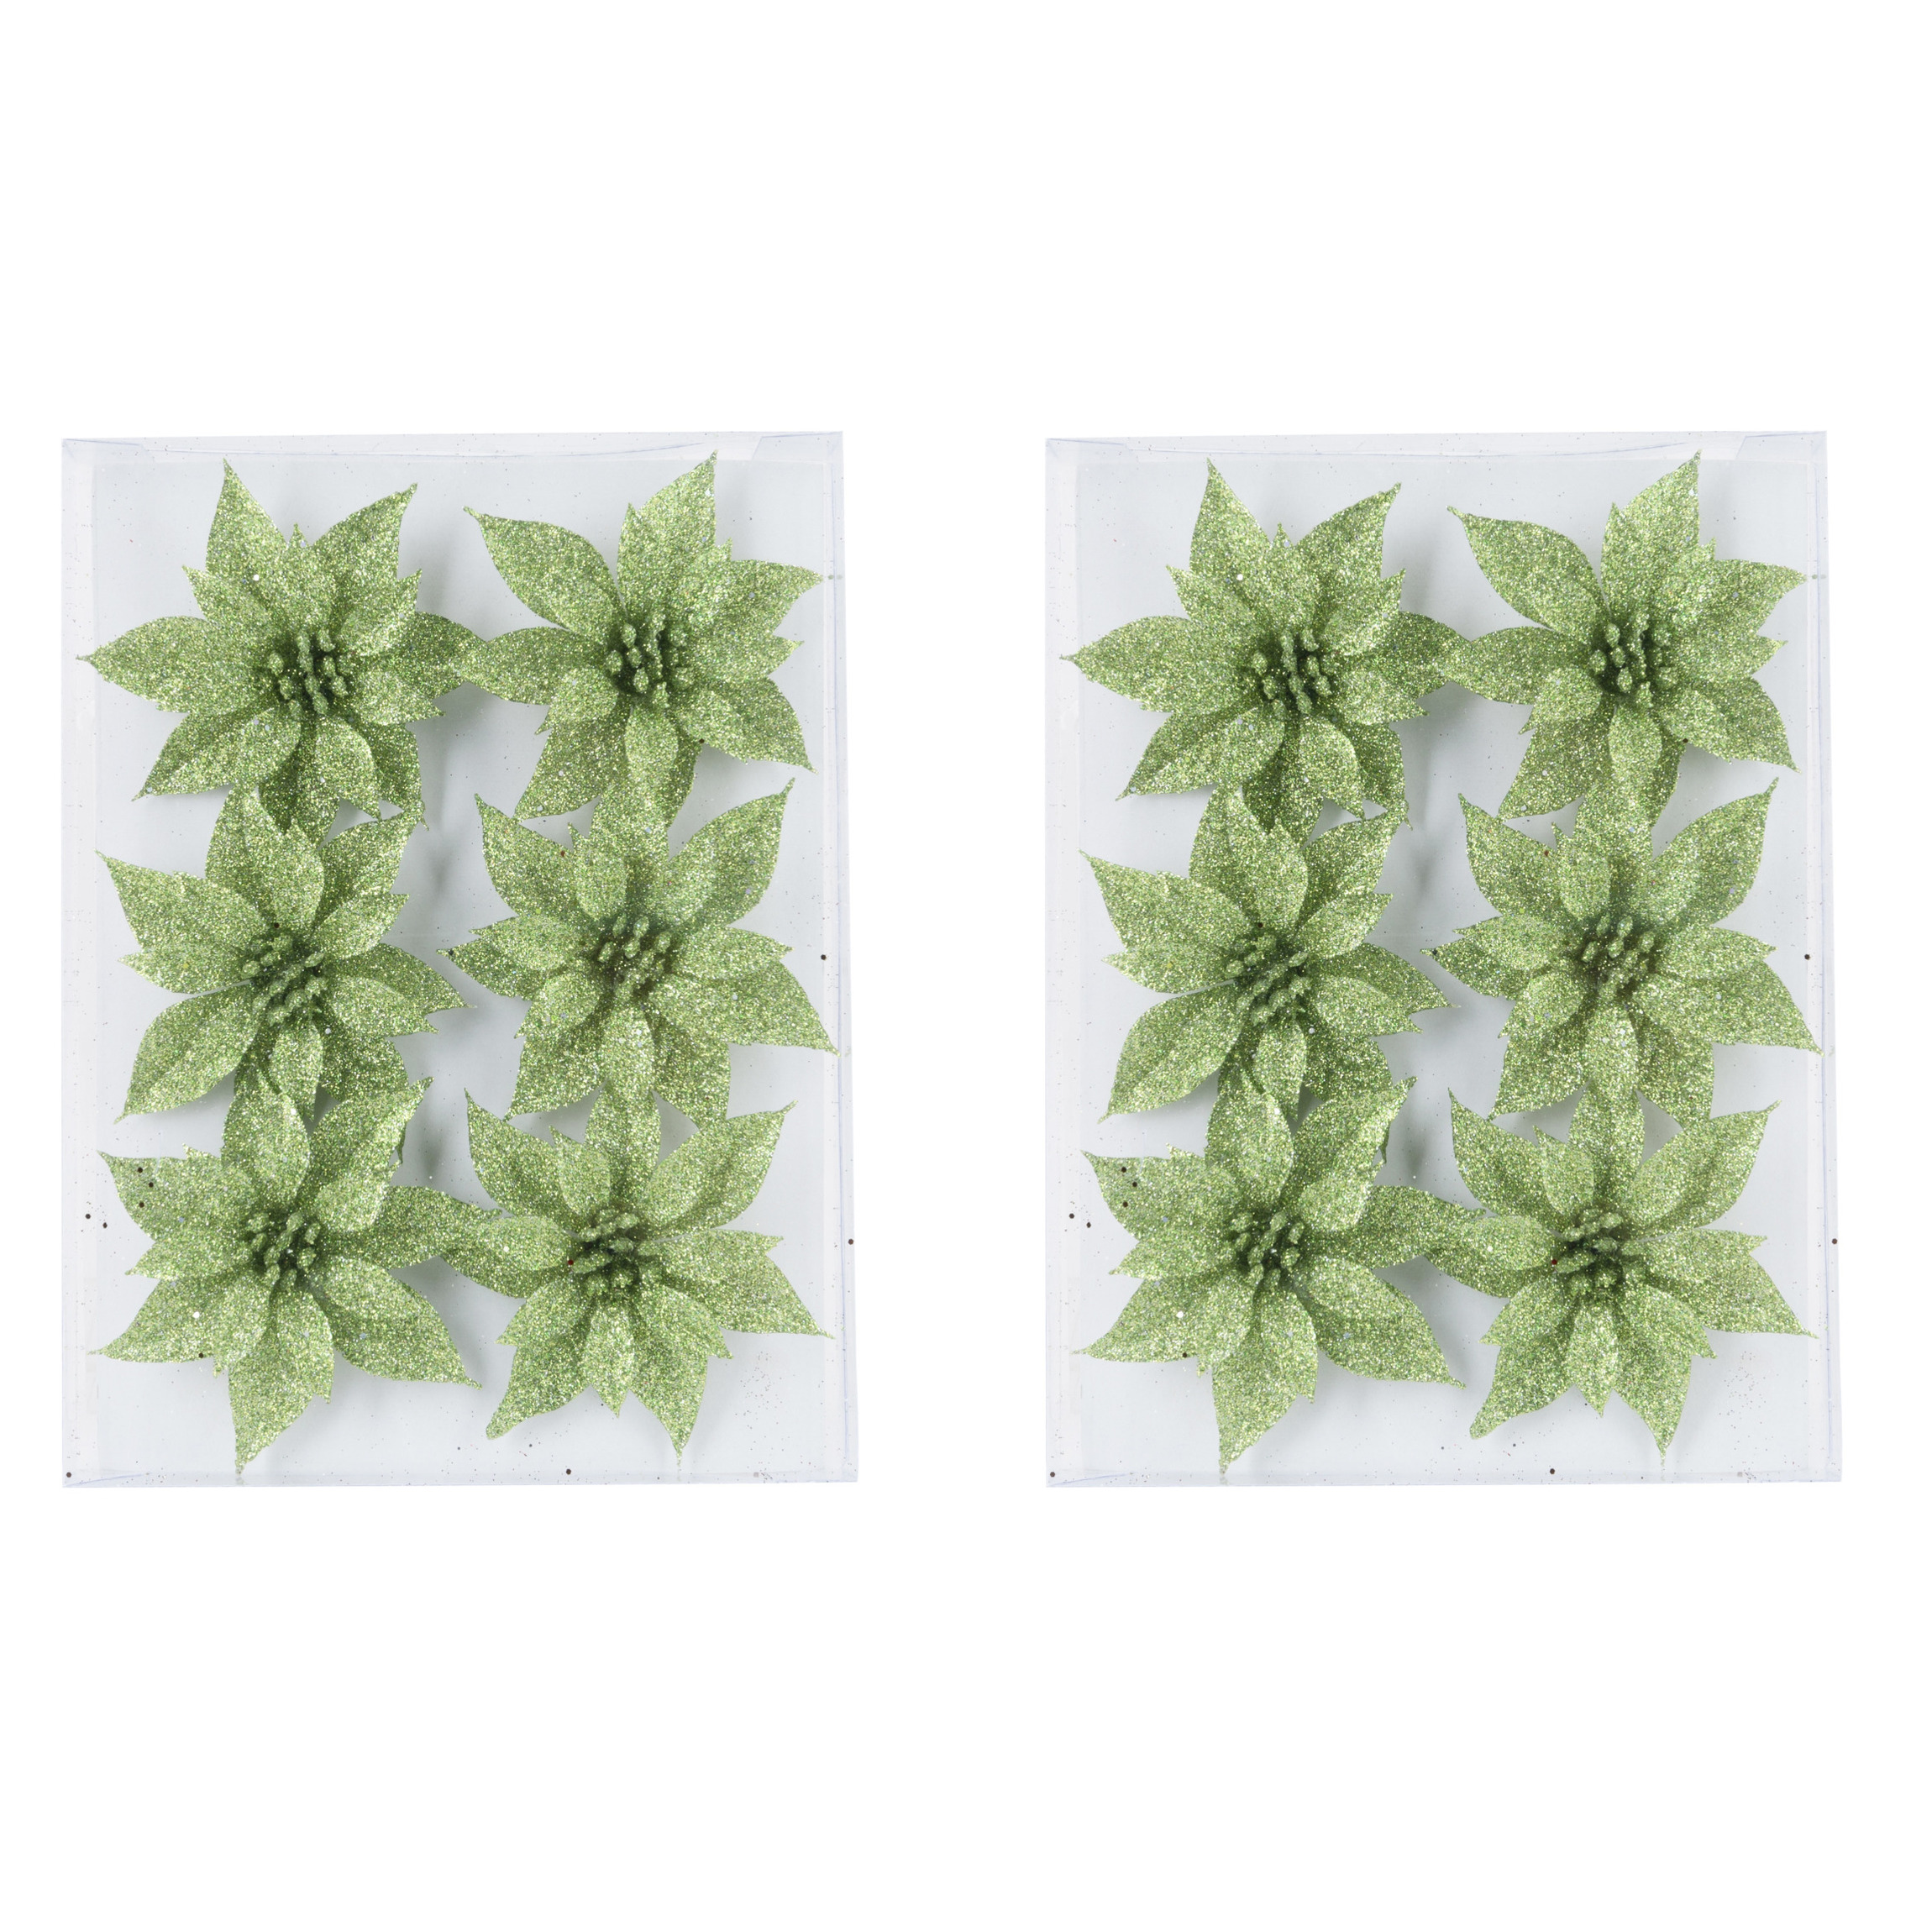 12x stuks decoratie bloemen rozen groen glitter op ijzerdraad 8 cm